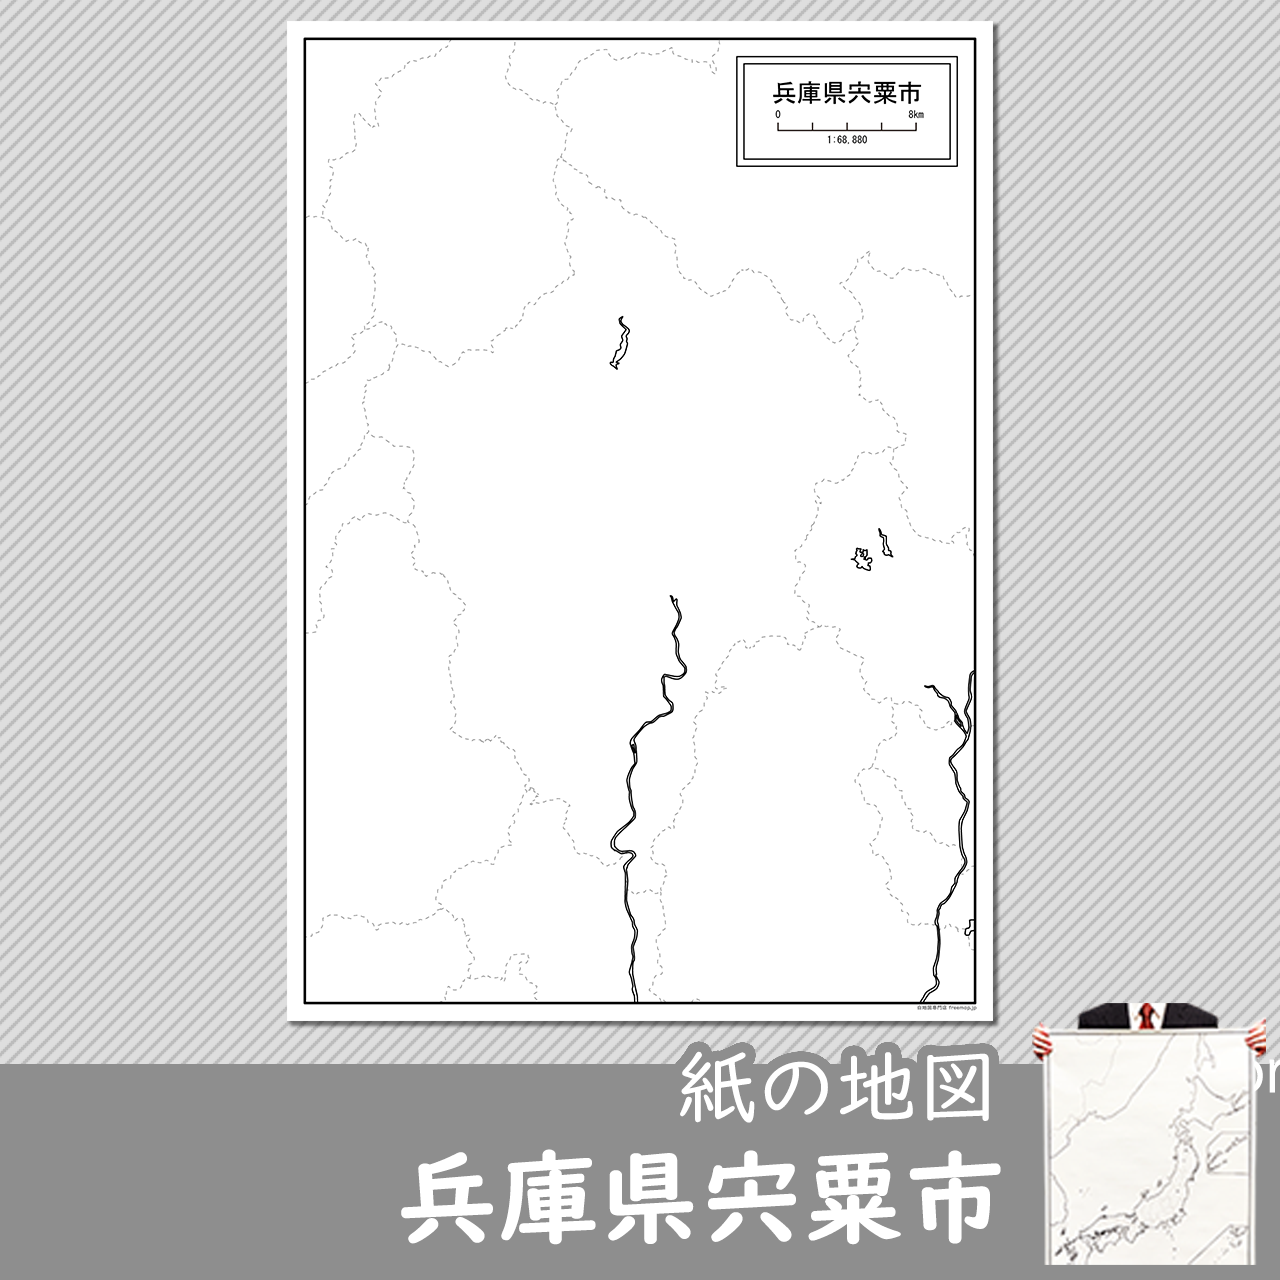 宍粟市の紙の白地図のサムネイル